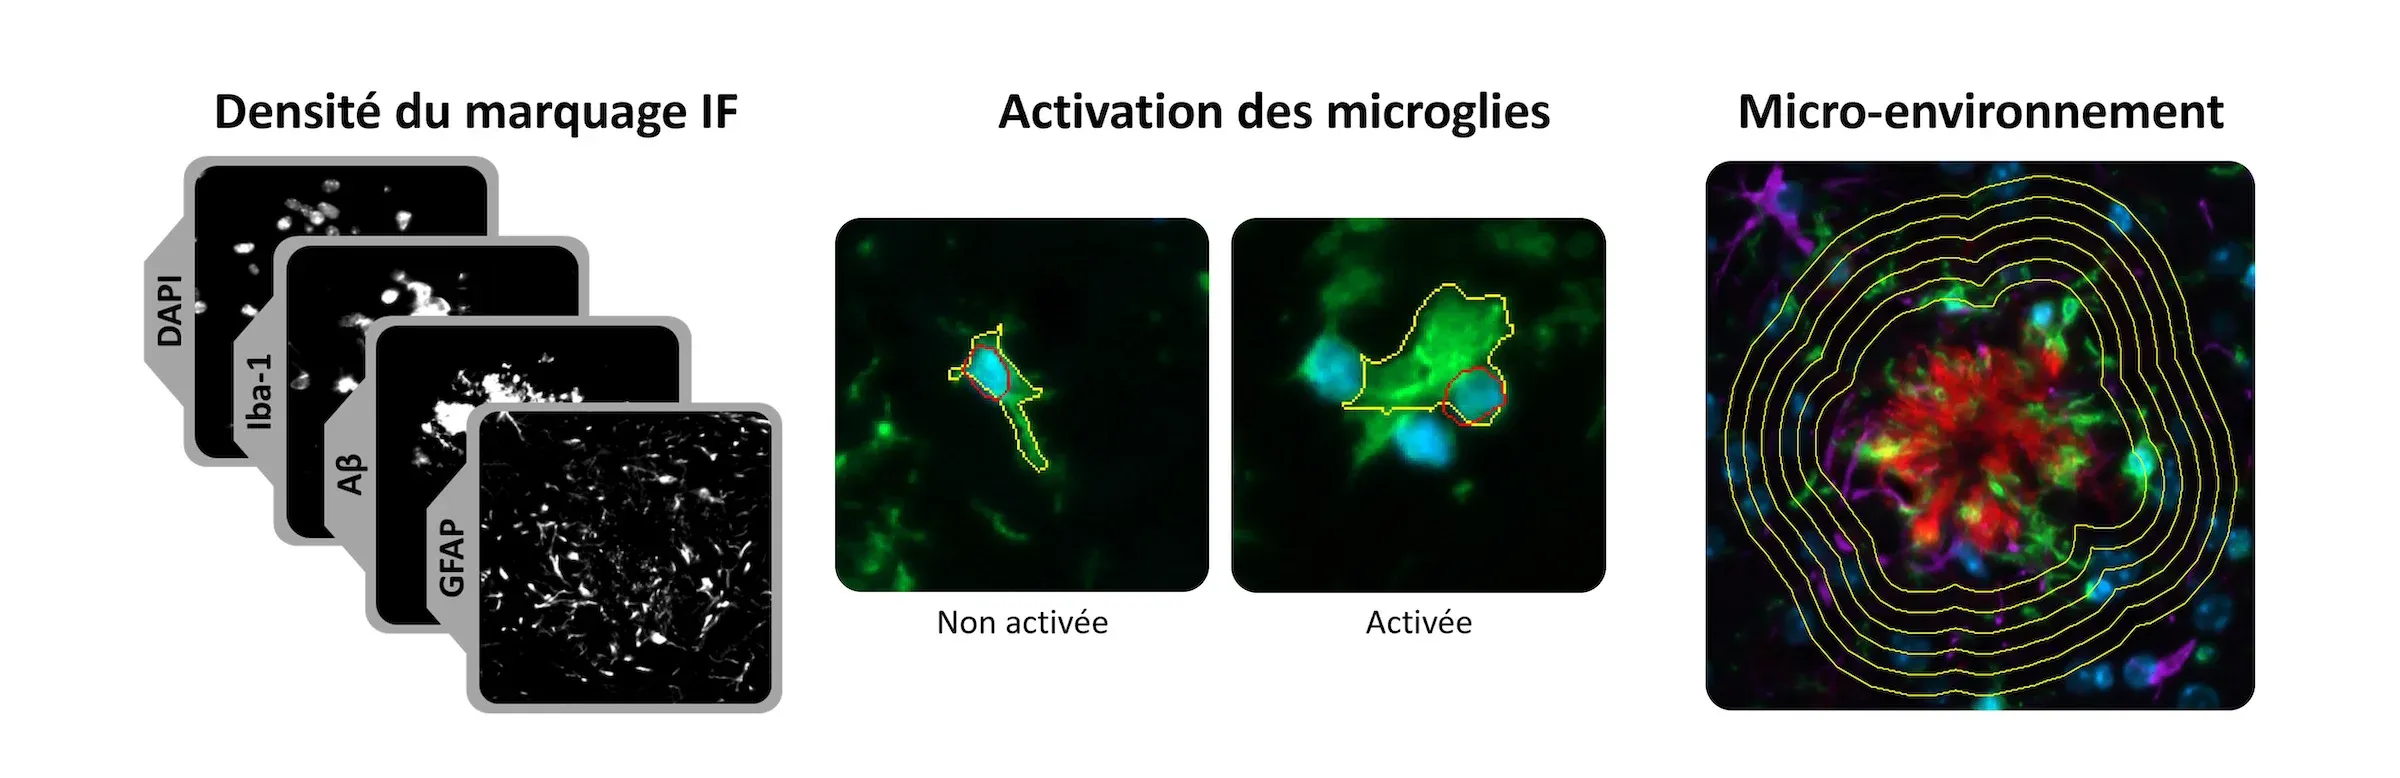 Composé de trois images microscopiques ou scanners différents, chacun illustrant un aspect différent de l'analyse des tissus biologiques, potentiellement dans le contexte de la neurobiologie.